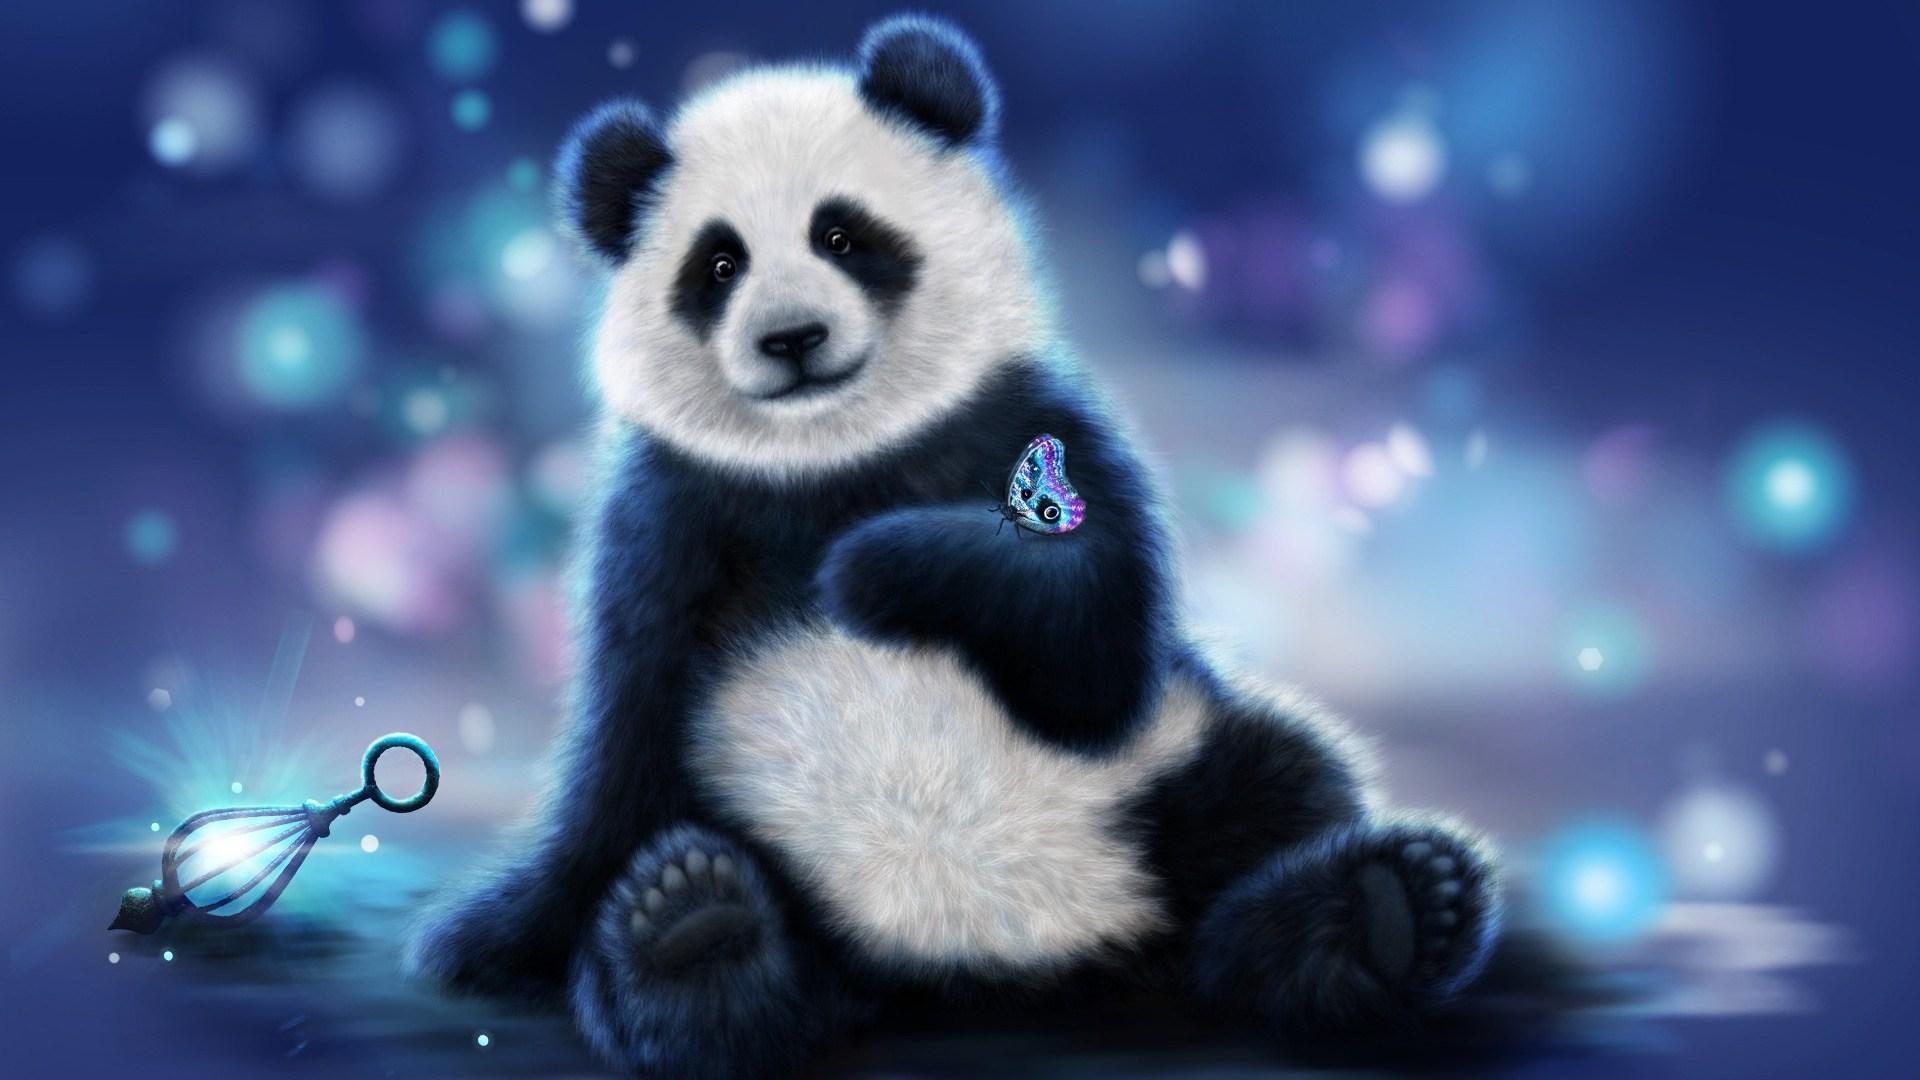 Cute Kawaii Panda Wallpaper Kawaii Panda IPhone Wallpaper